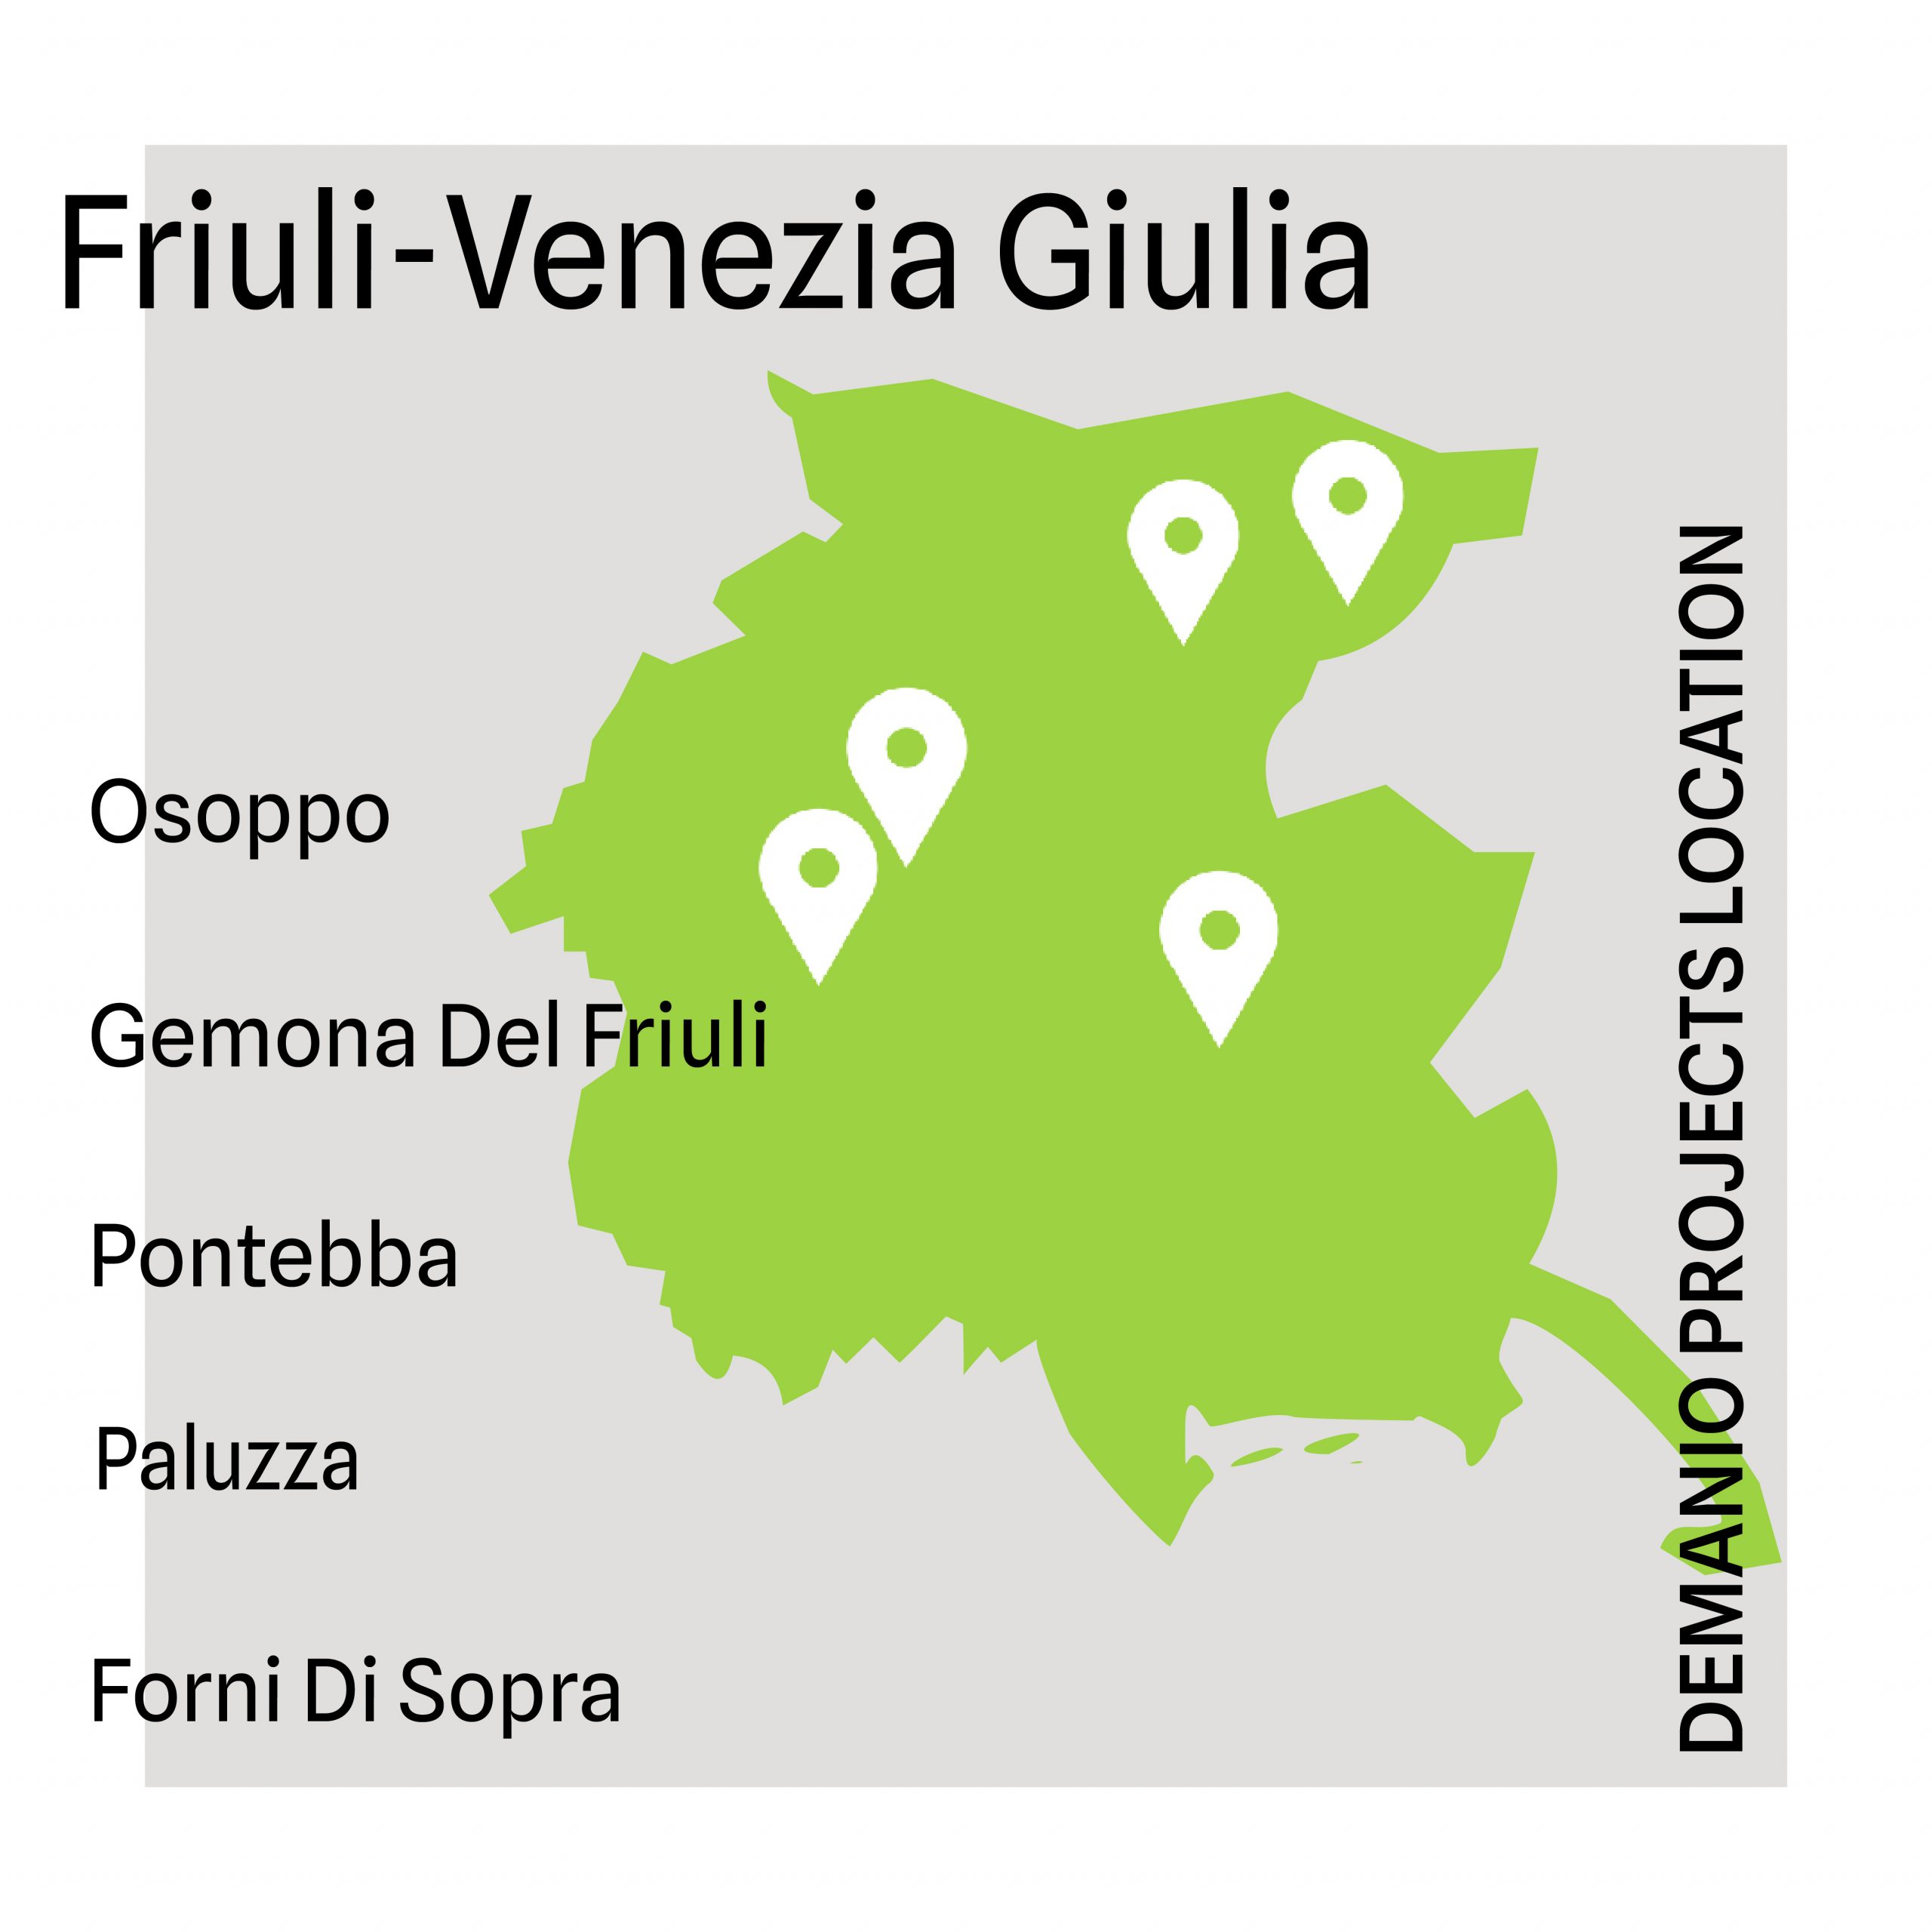 Friuli-Venezia Giulia / Demanio projects location